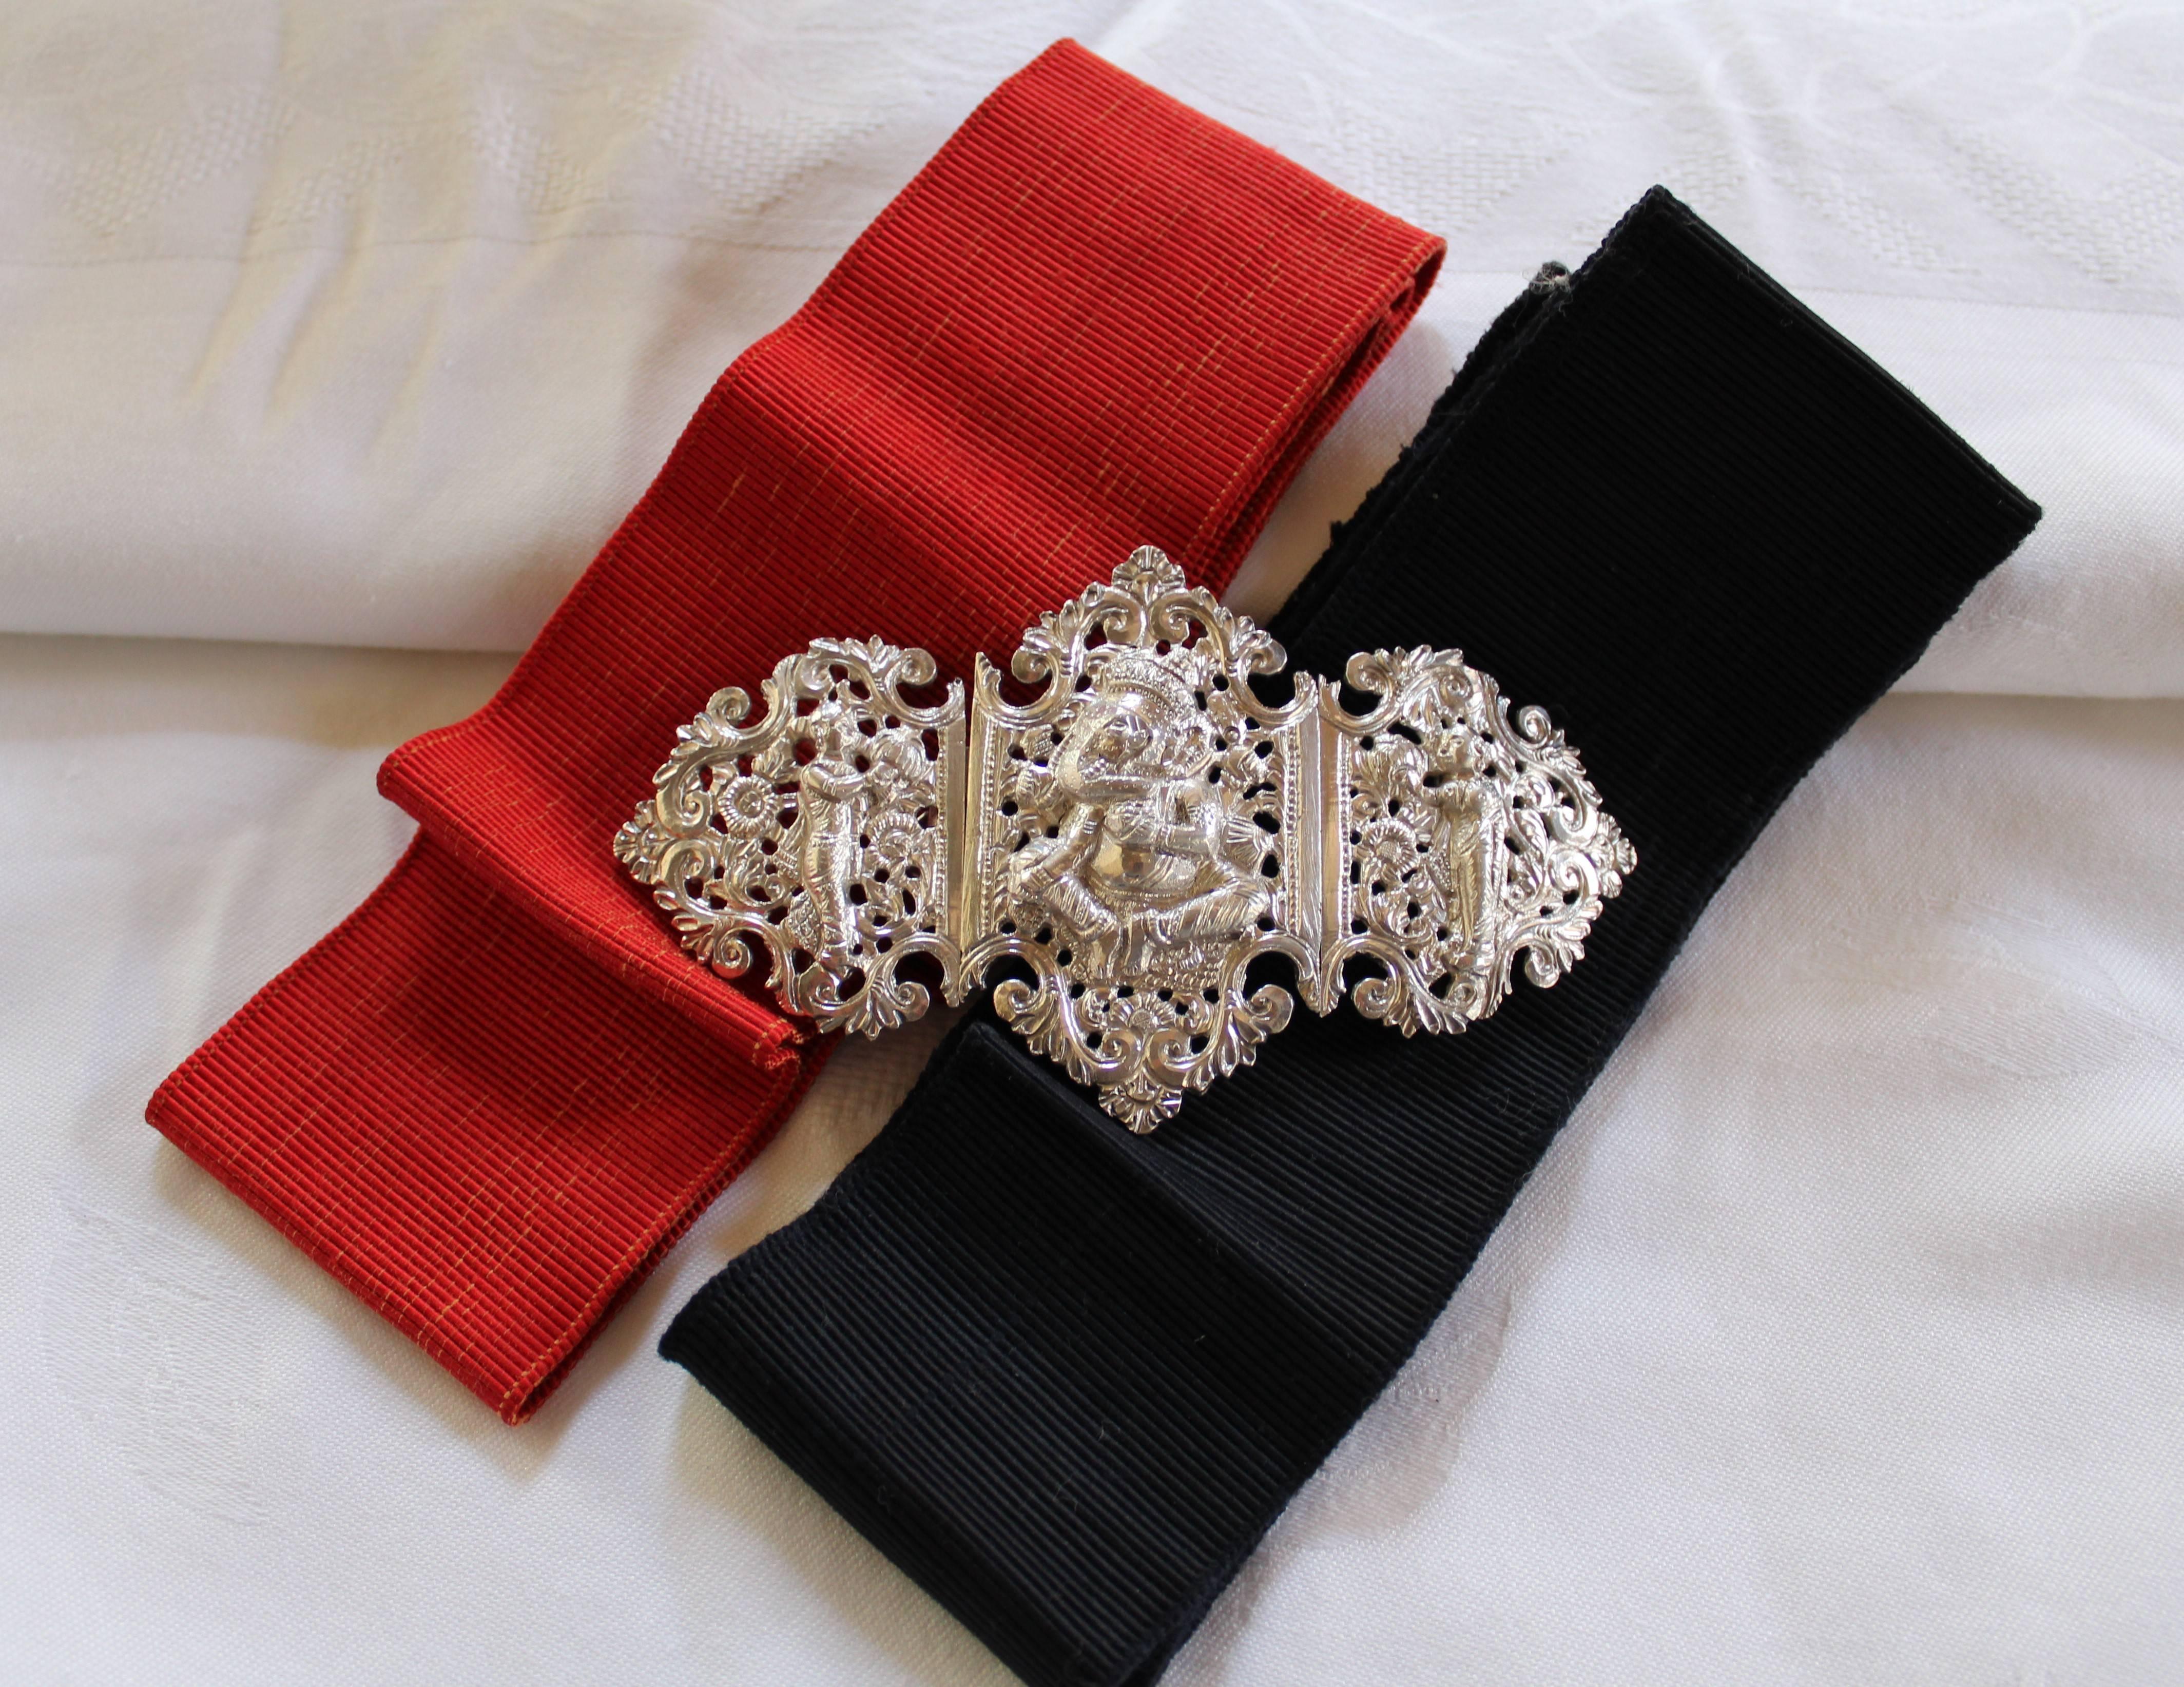 Il s'agit d'une ancienne boucle de ceinture anglo-indienne en argent, très ornée et décorative, avec des rubans de ceinture rouges et noirs.  Il date du début du XXe siècle et se compose de trois sections distinctes - deux panneaux sont reliés par